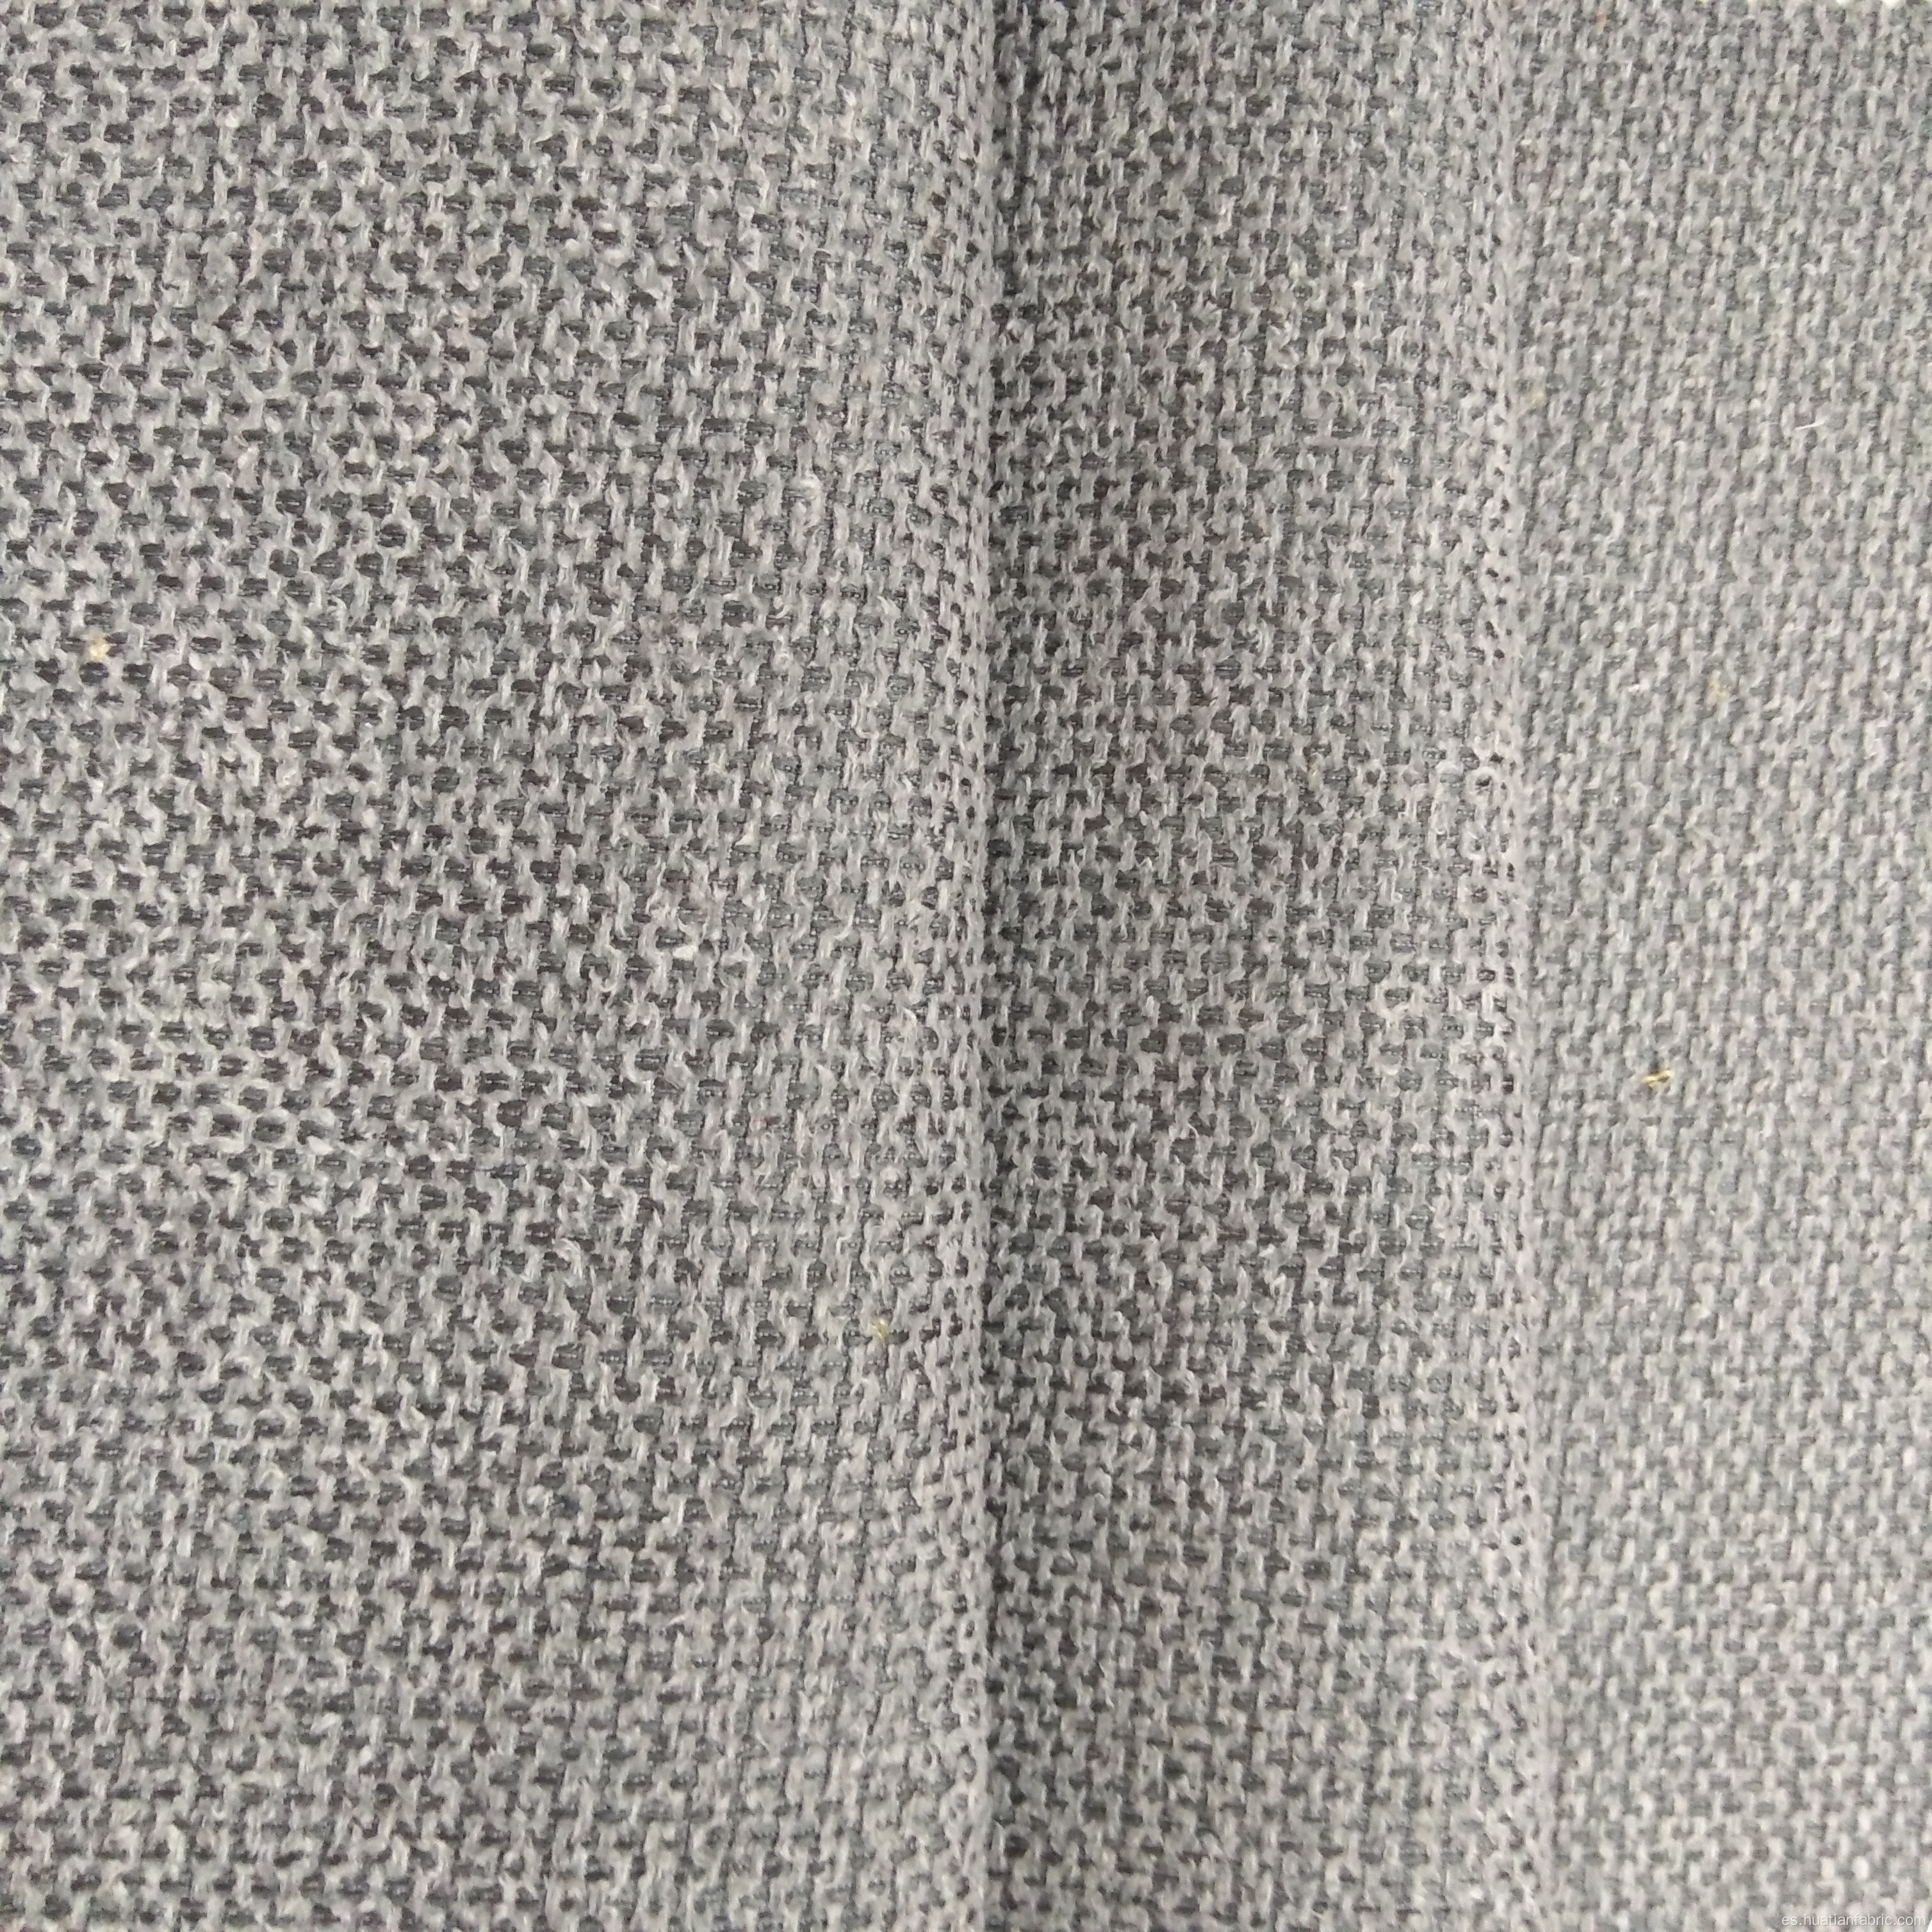 100% de lino de poliéster aspecto tapicería cortina sofá tela